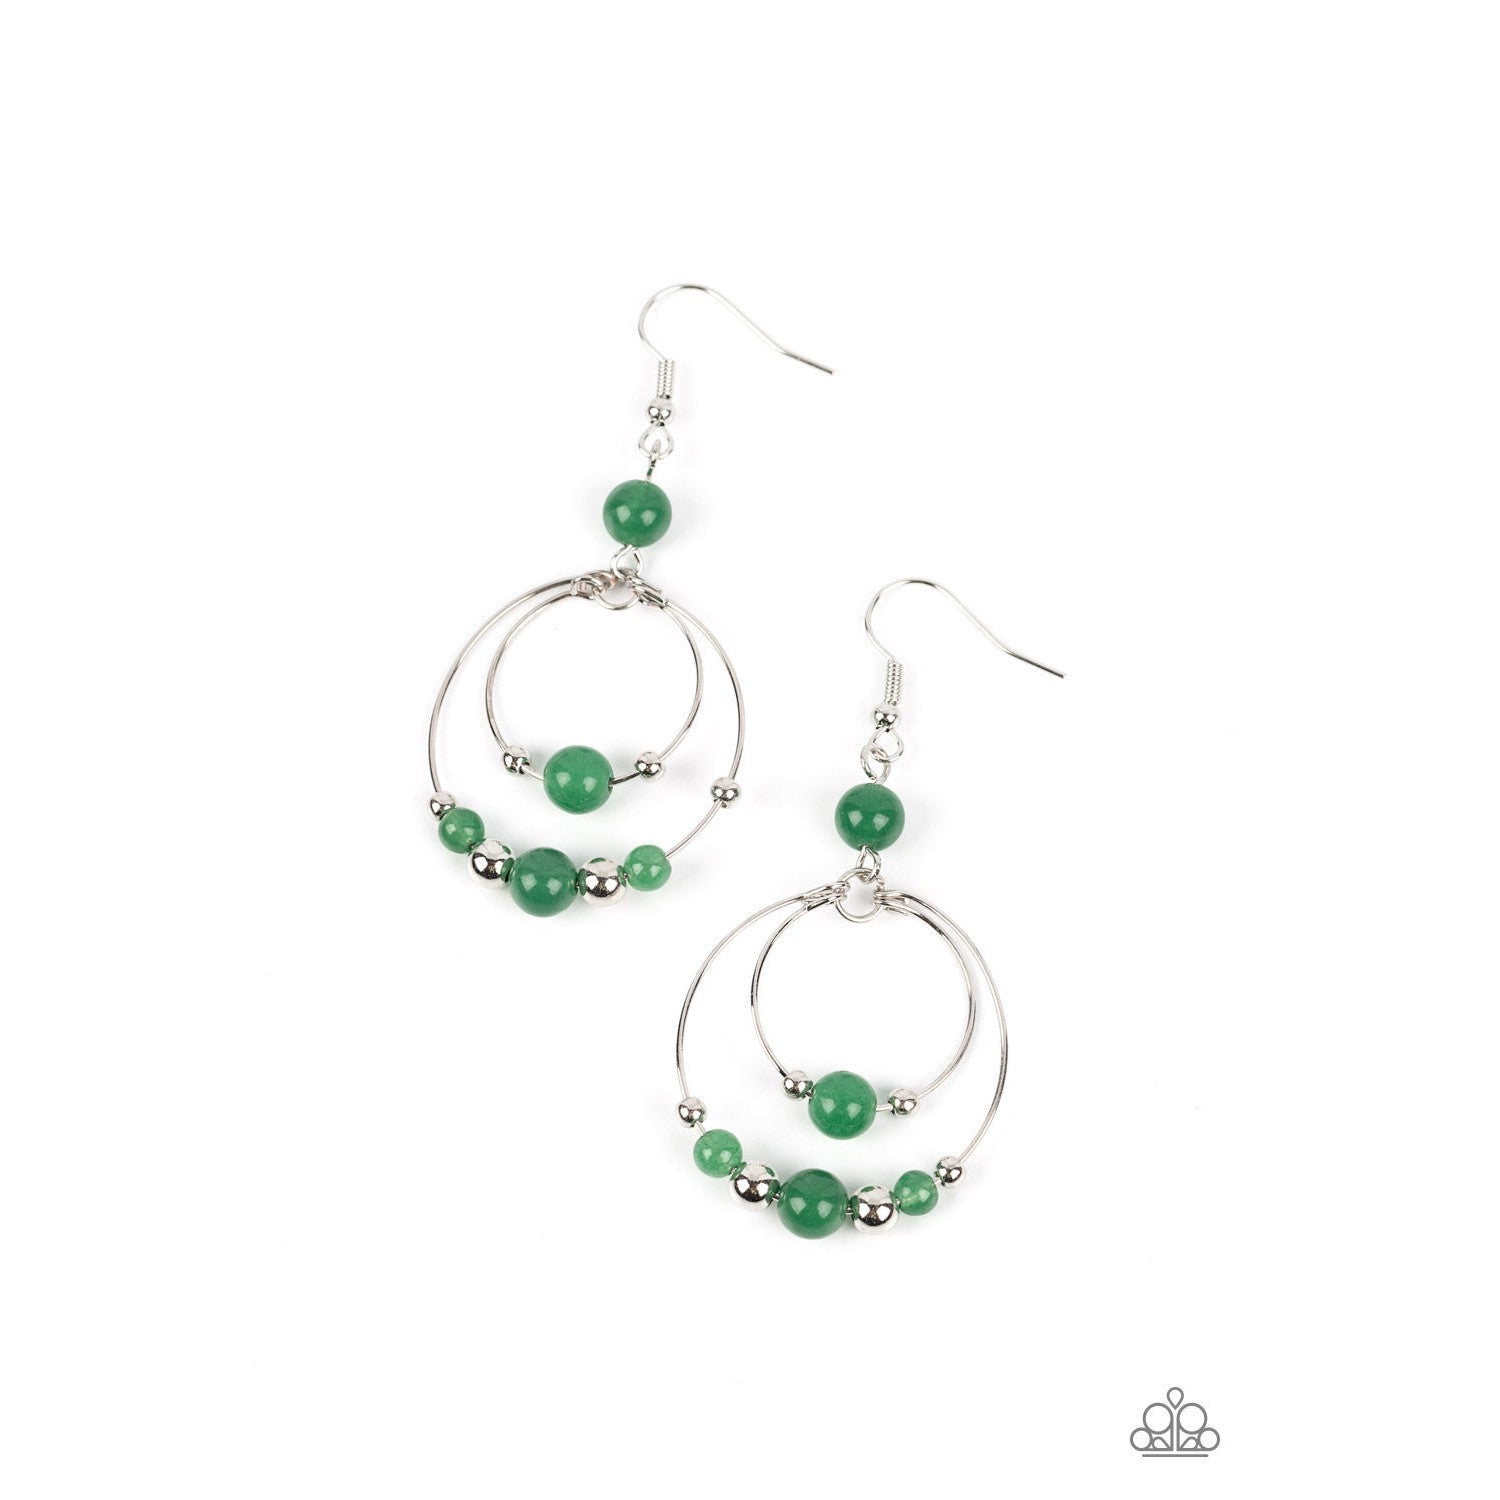 Eco Eden - Green Earrings - Bling by Danielle Baker